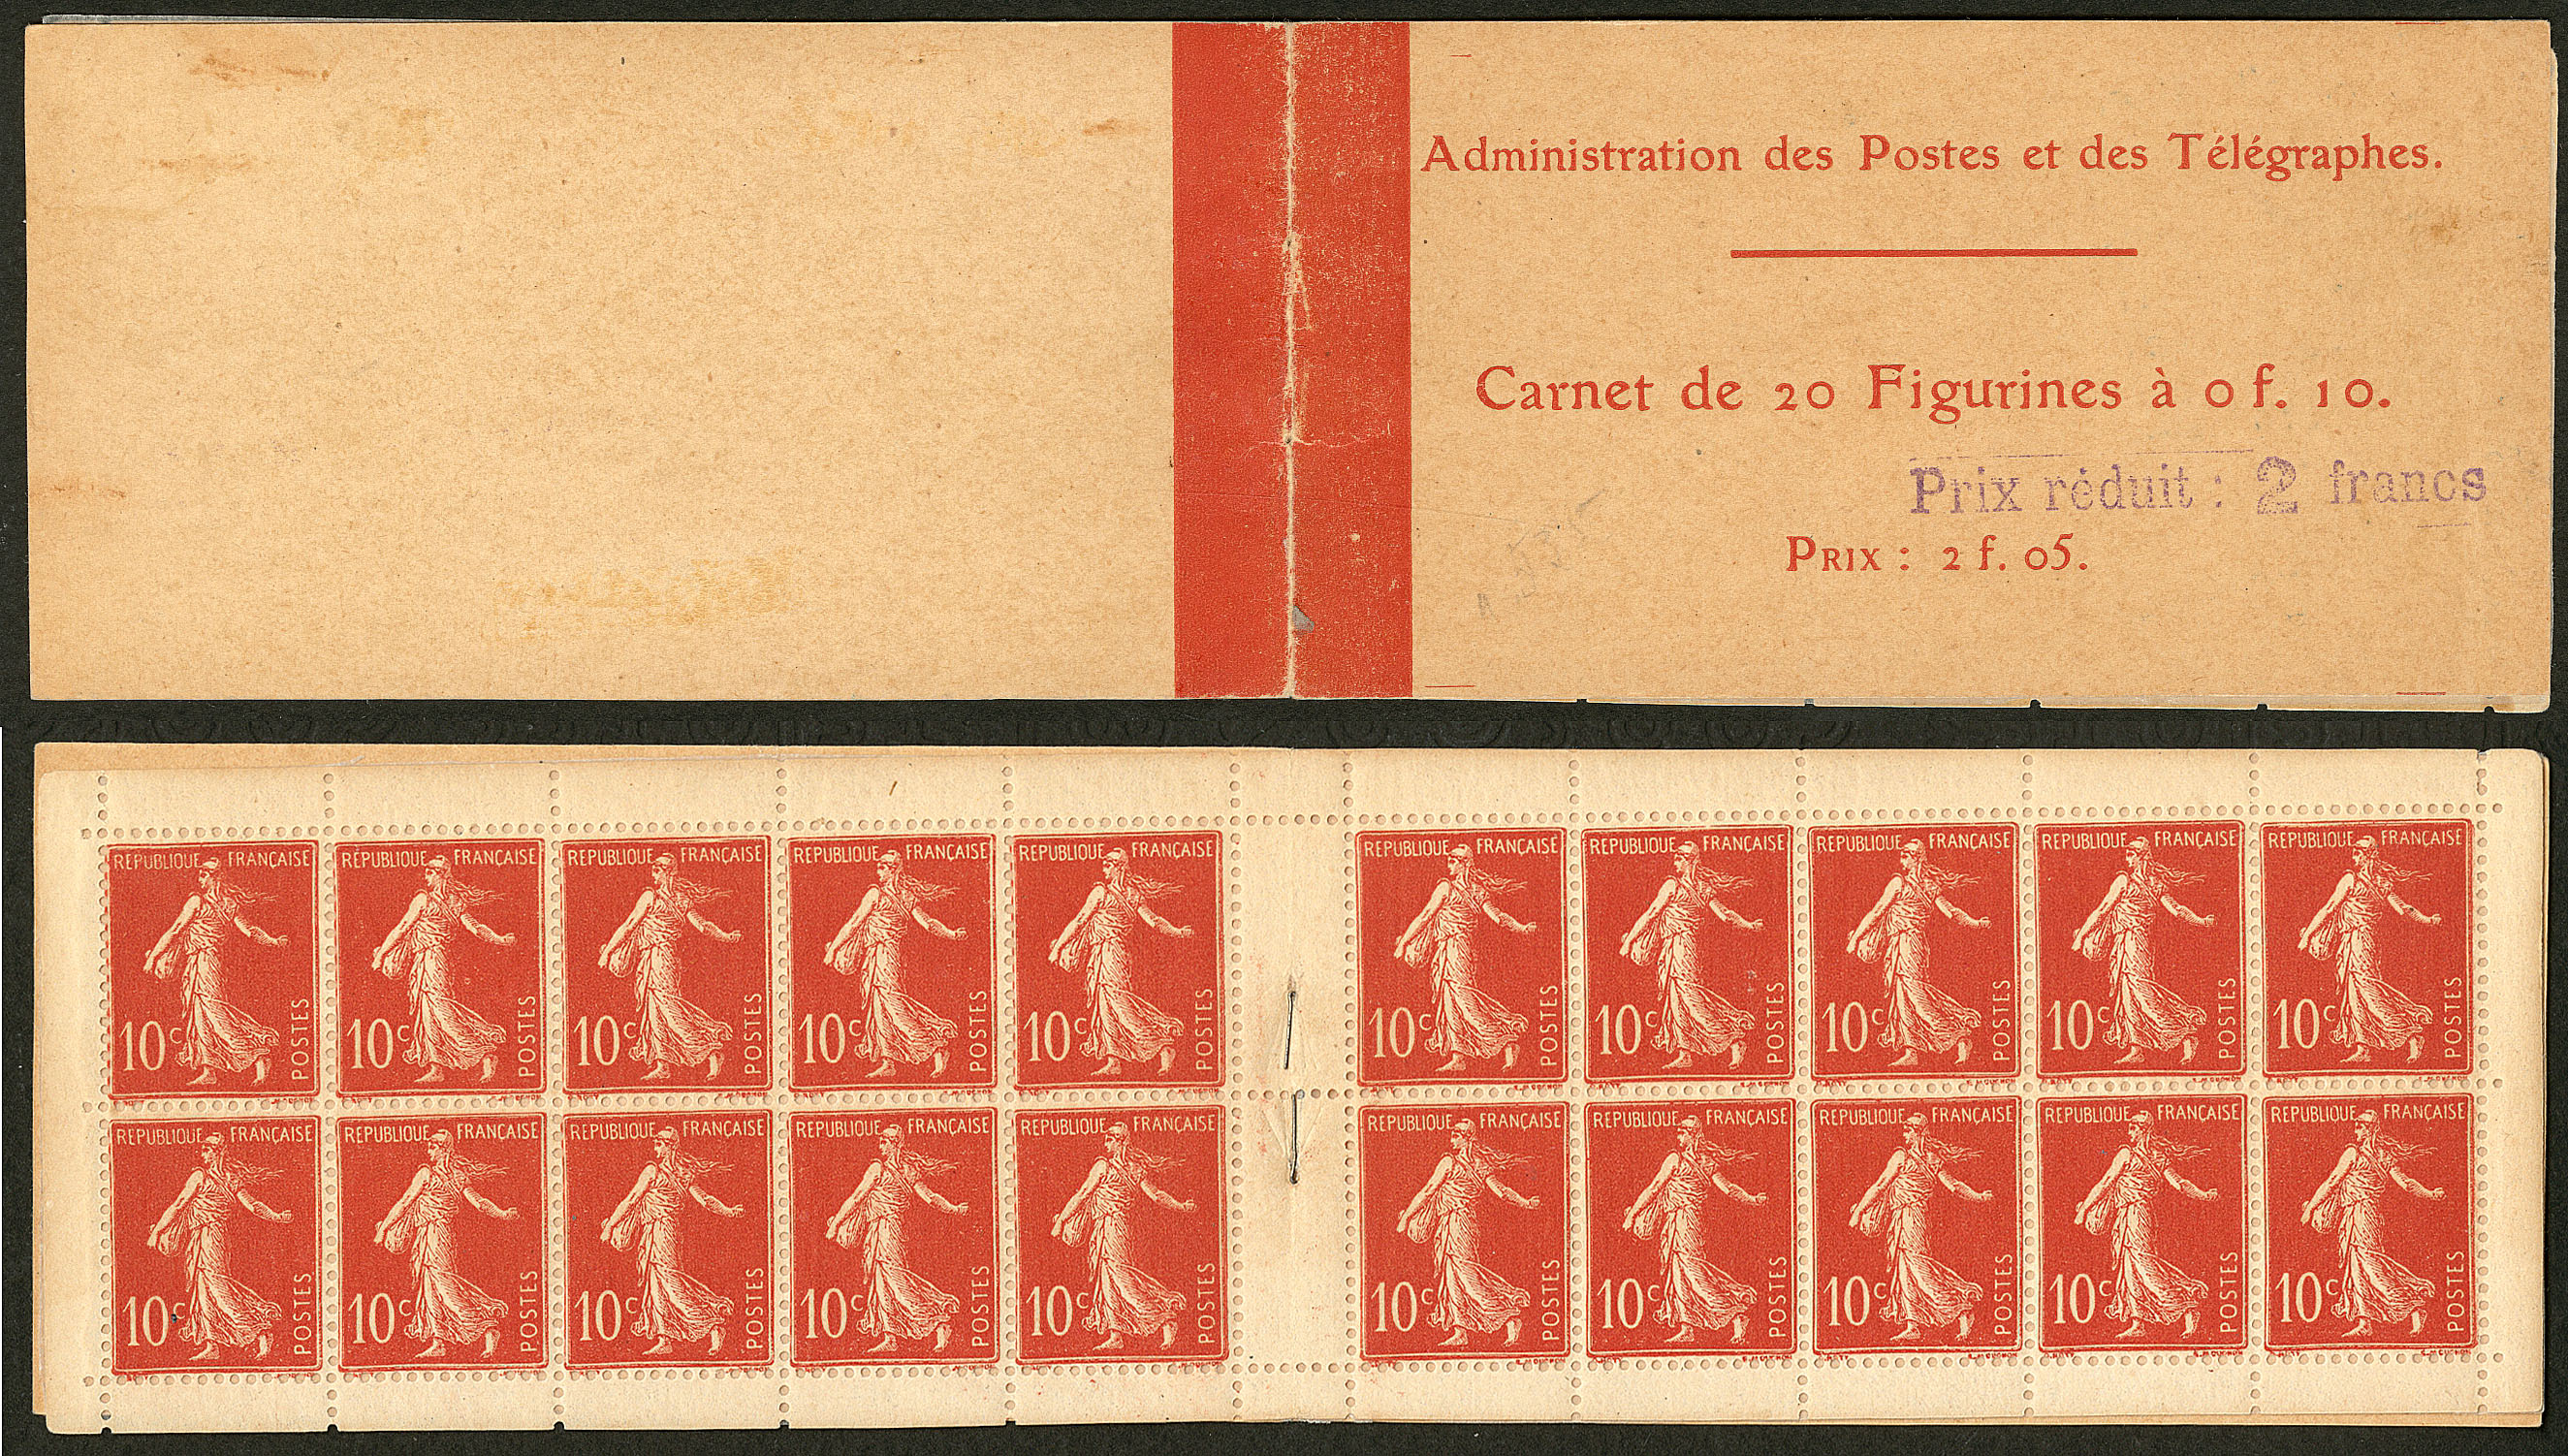 Carnet de timbres Croix-Rouge 2019. - Philantologie